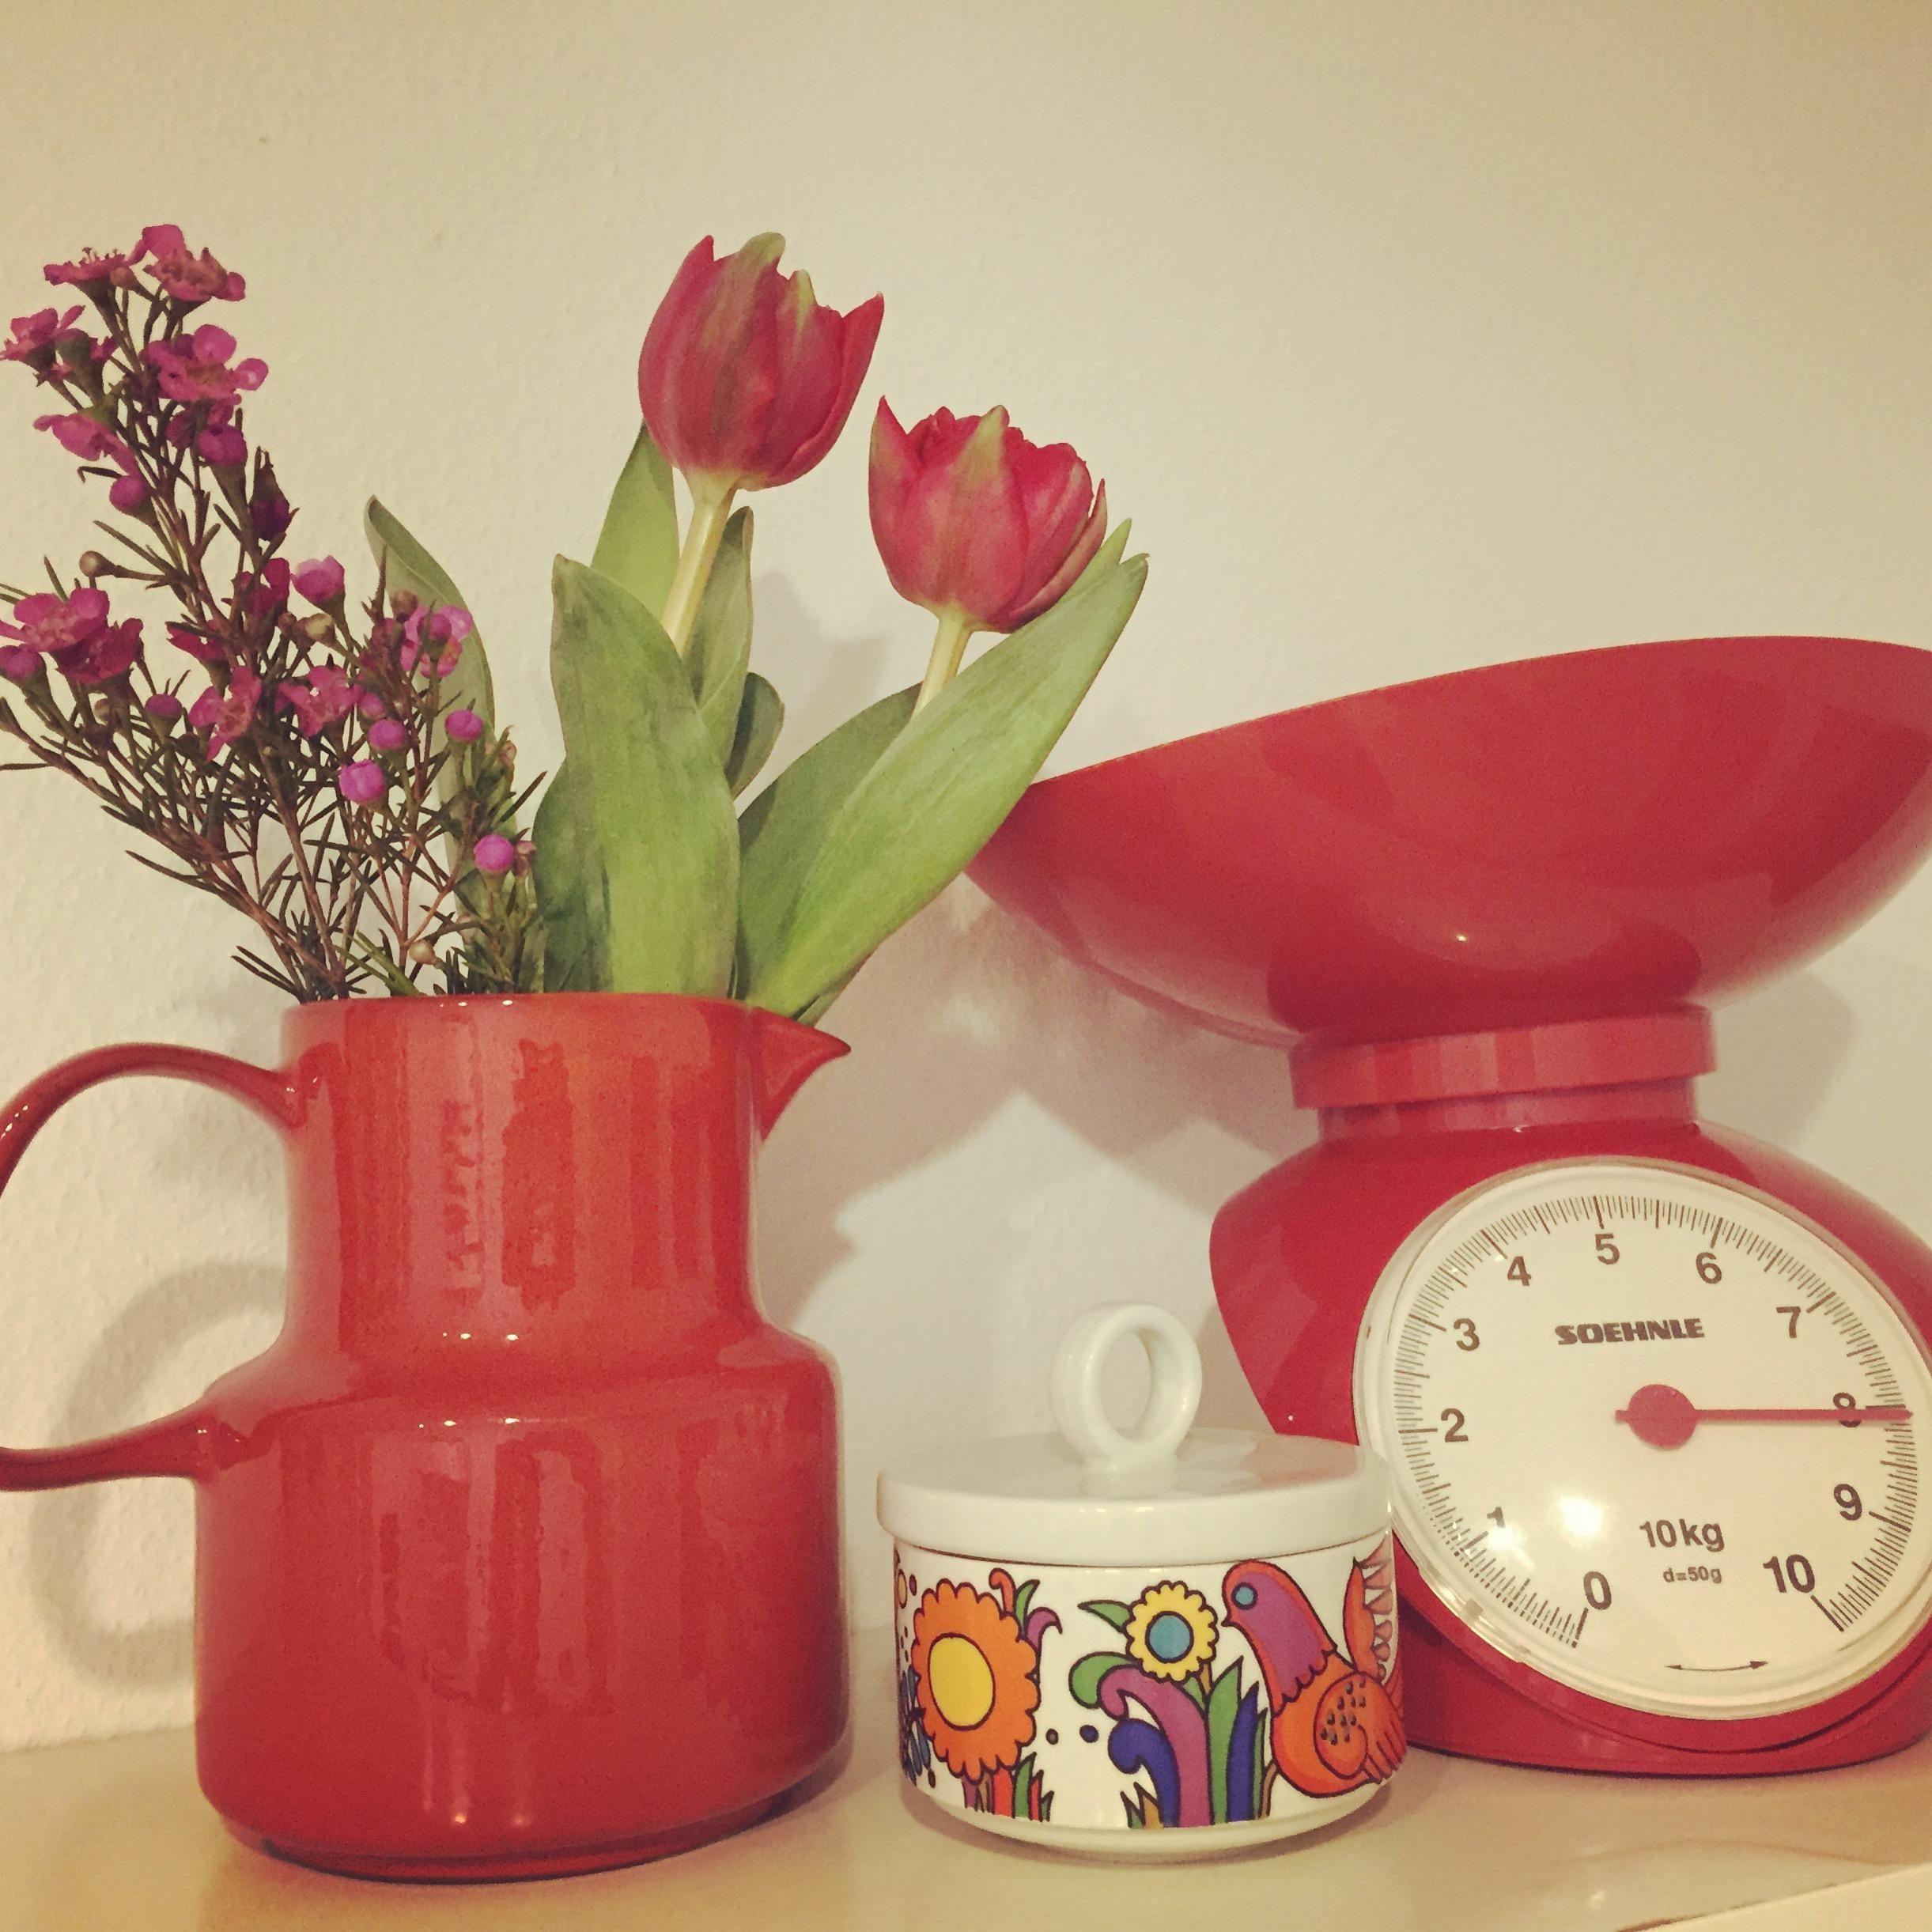 Tulpen und „Acapulco“ Zuckerdose. Passen gut zusammen, oder?
#hellospring #tulpe #rot #flohmarkt